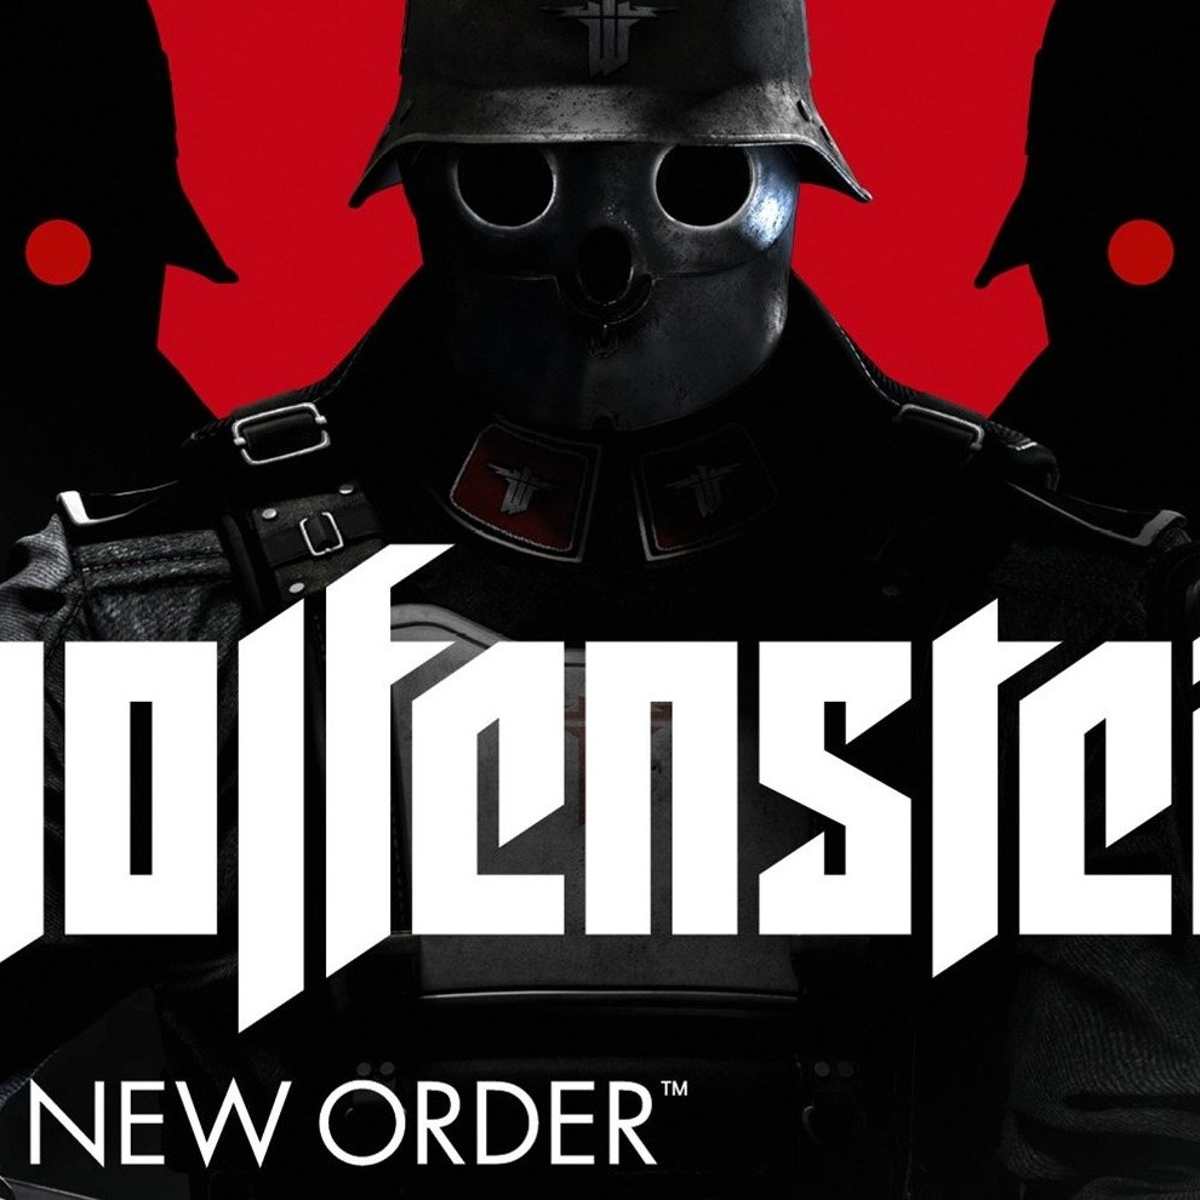 Wolfenstein: The New Order Cheats, Enigma-Codes, geheimer